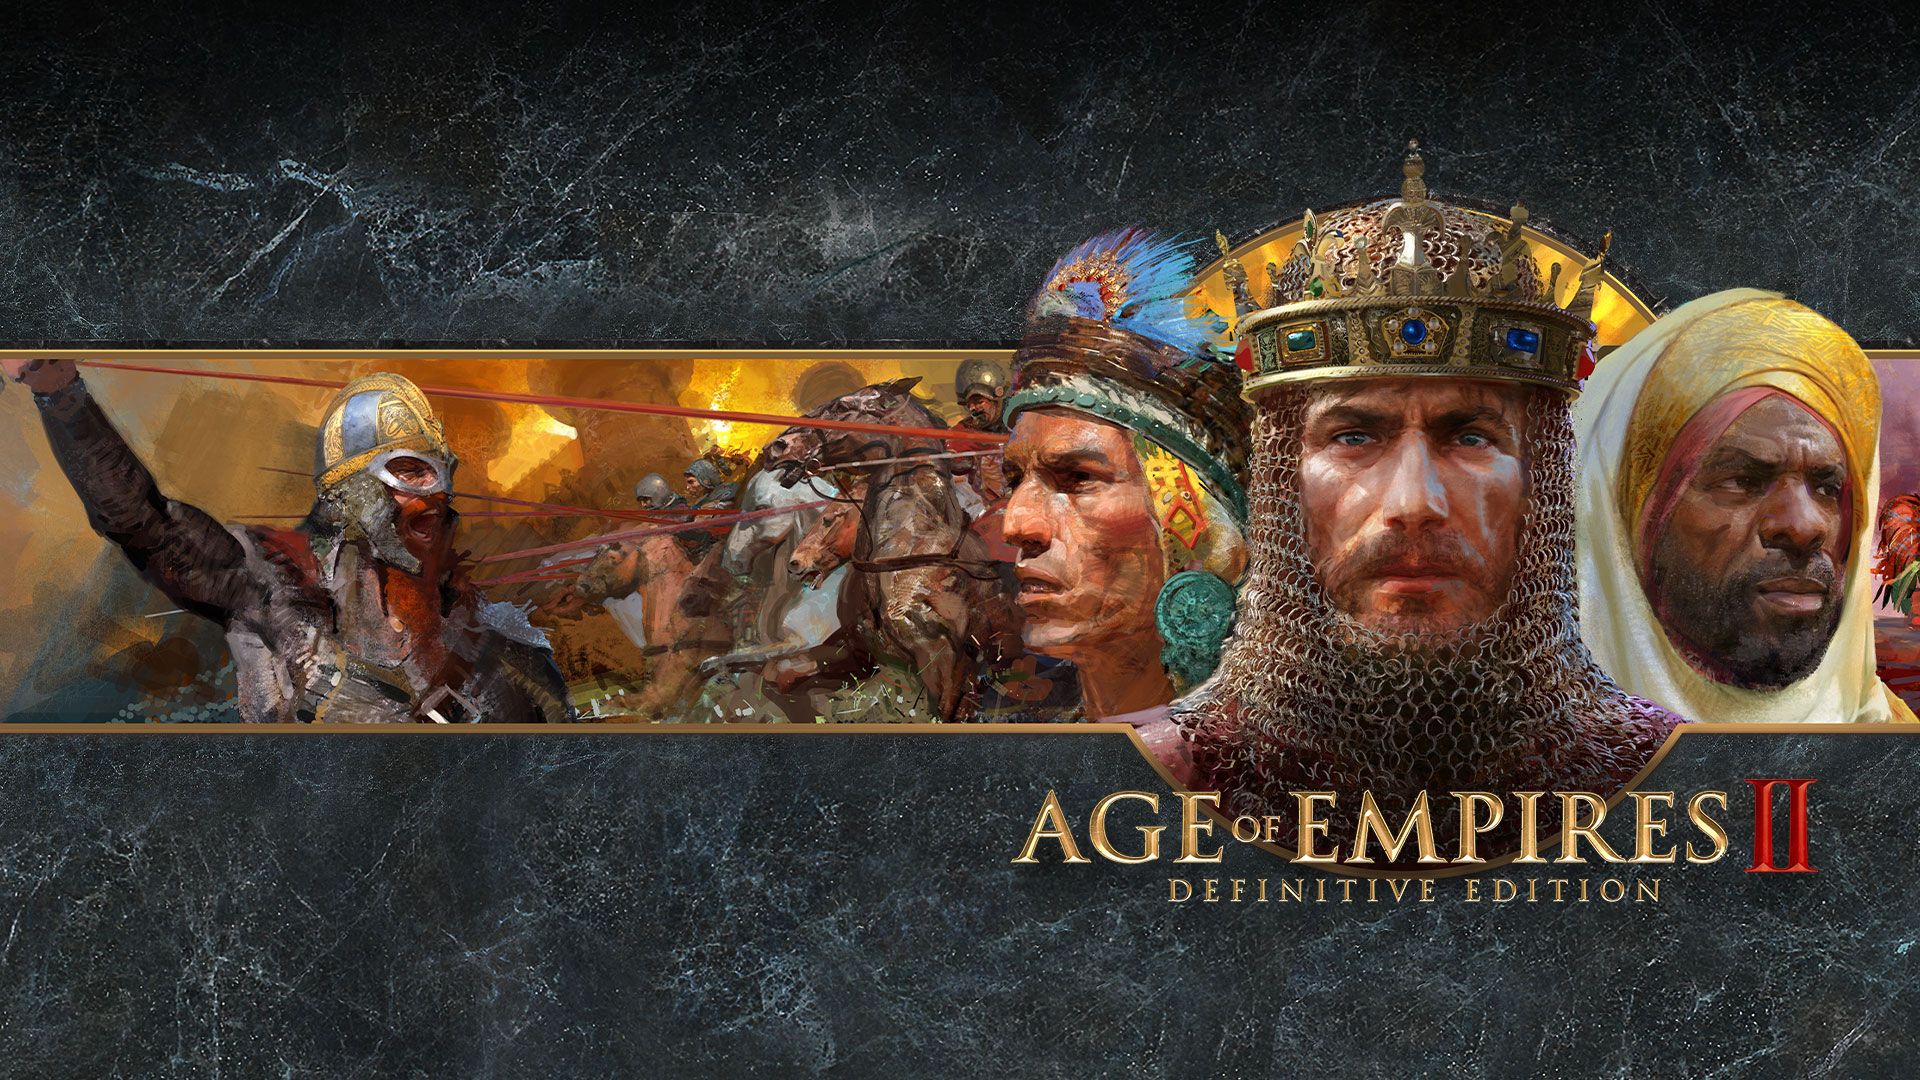 Логотип Age of Empires II Definitive Edition с художественным изображением враждующих фракций